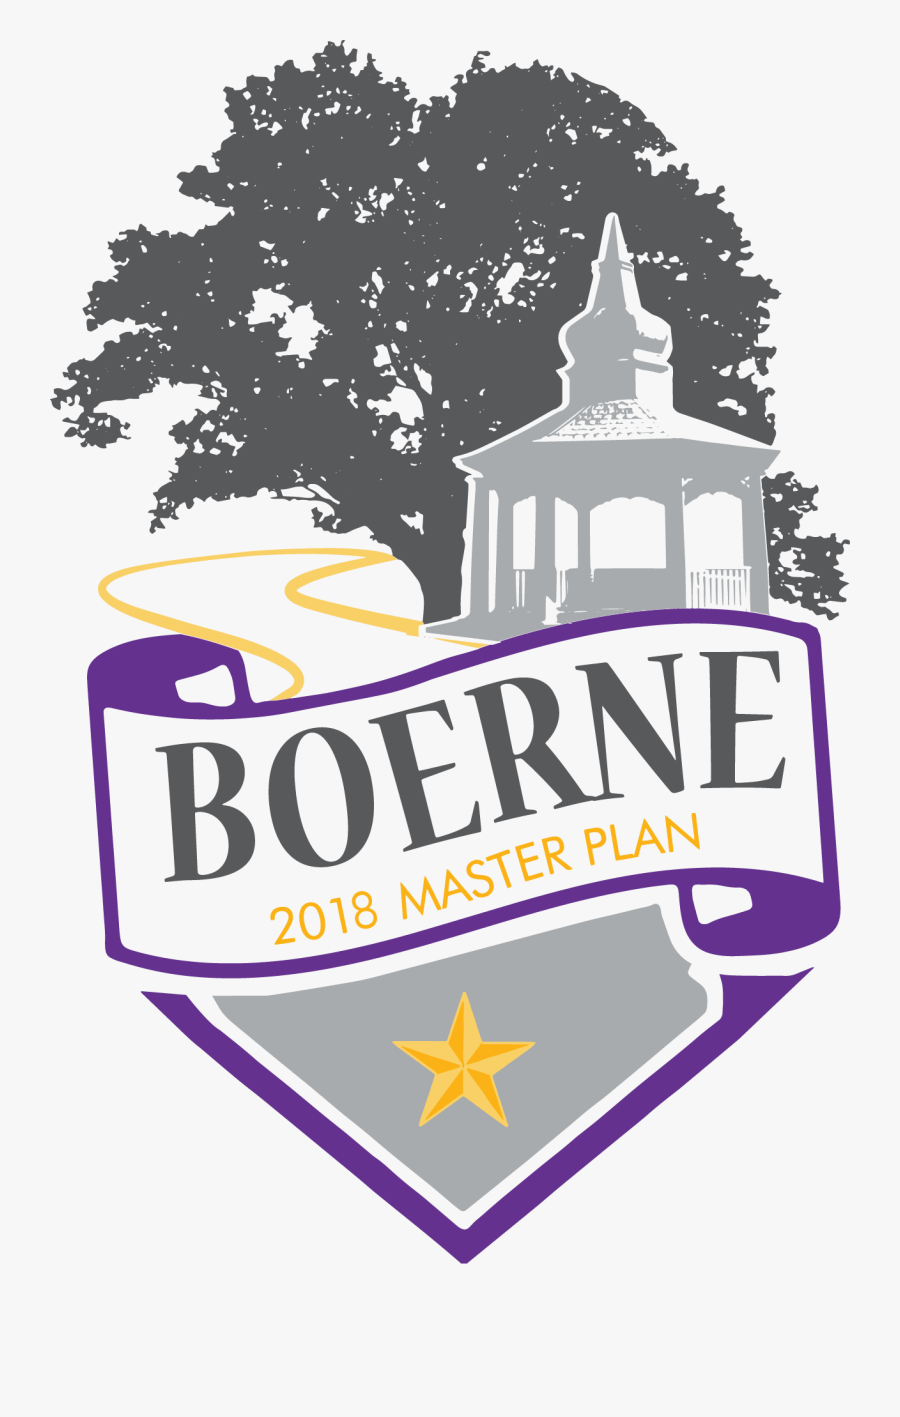 Boerne Master Plan Update Project - Heritage Behavioral Health Center, Transparent Clipart